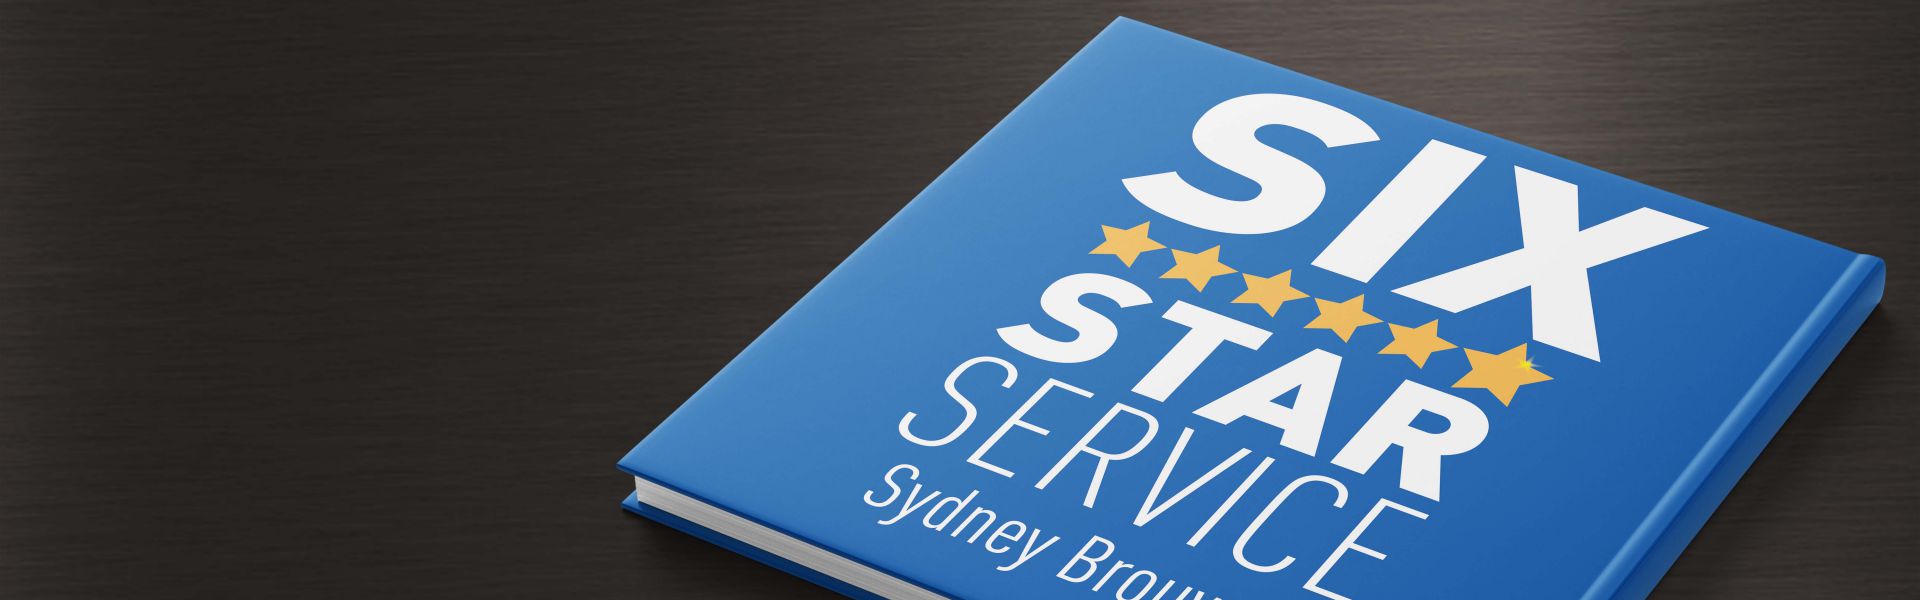 Six Star Service: Maak een onvergetelijke indruk op je klanten